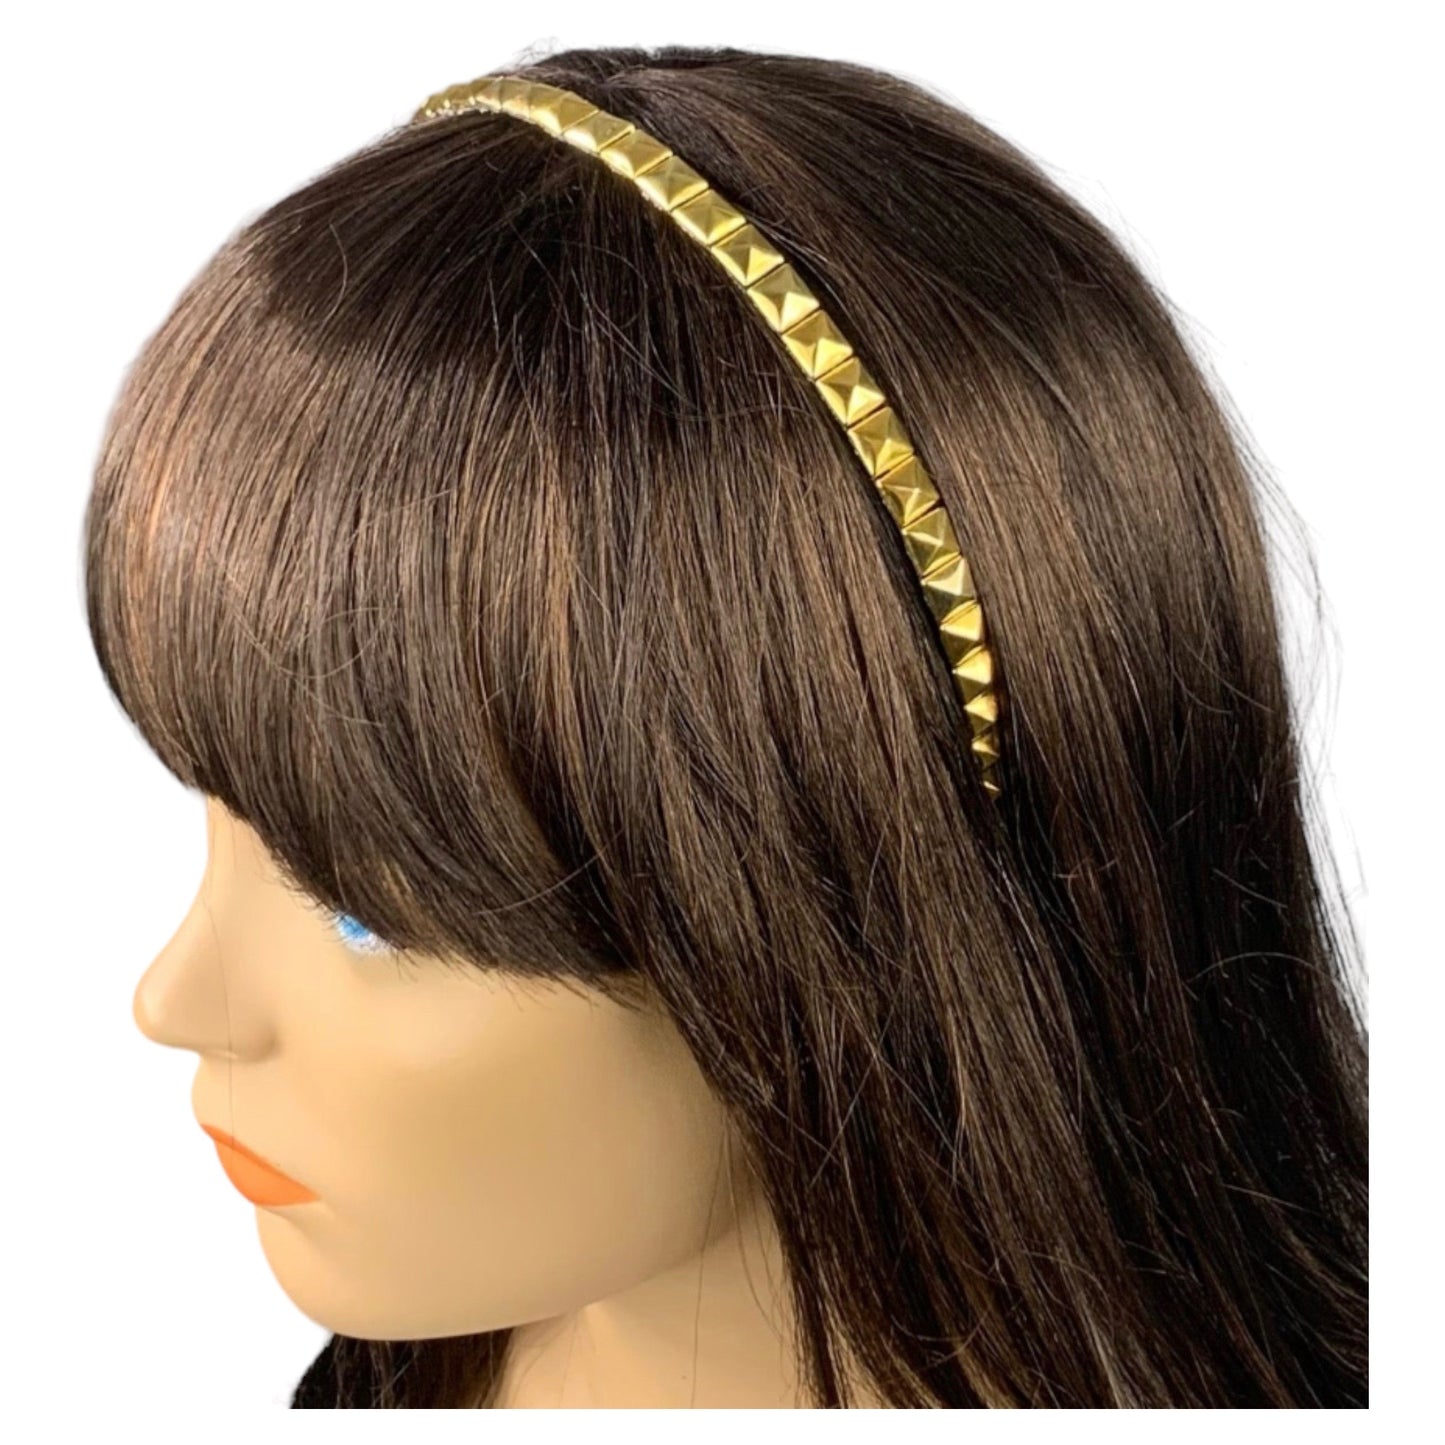 Gold Stud Trim Metal Headband